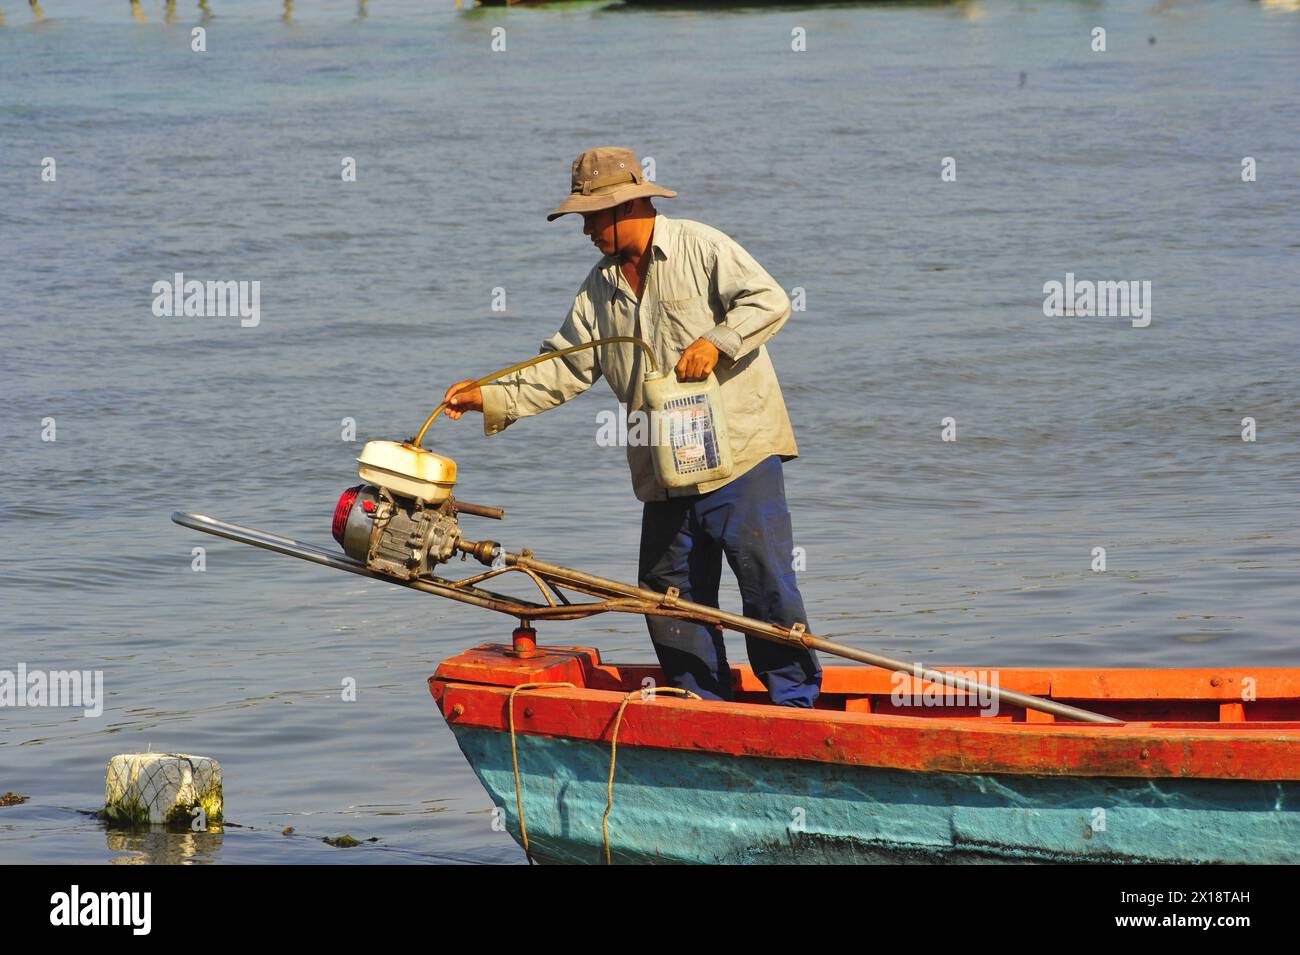 le bateau de pêche est indispensable pour les bateaux de pêche pour la pêche Banque D'Images